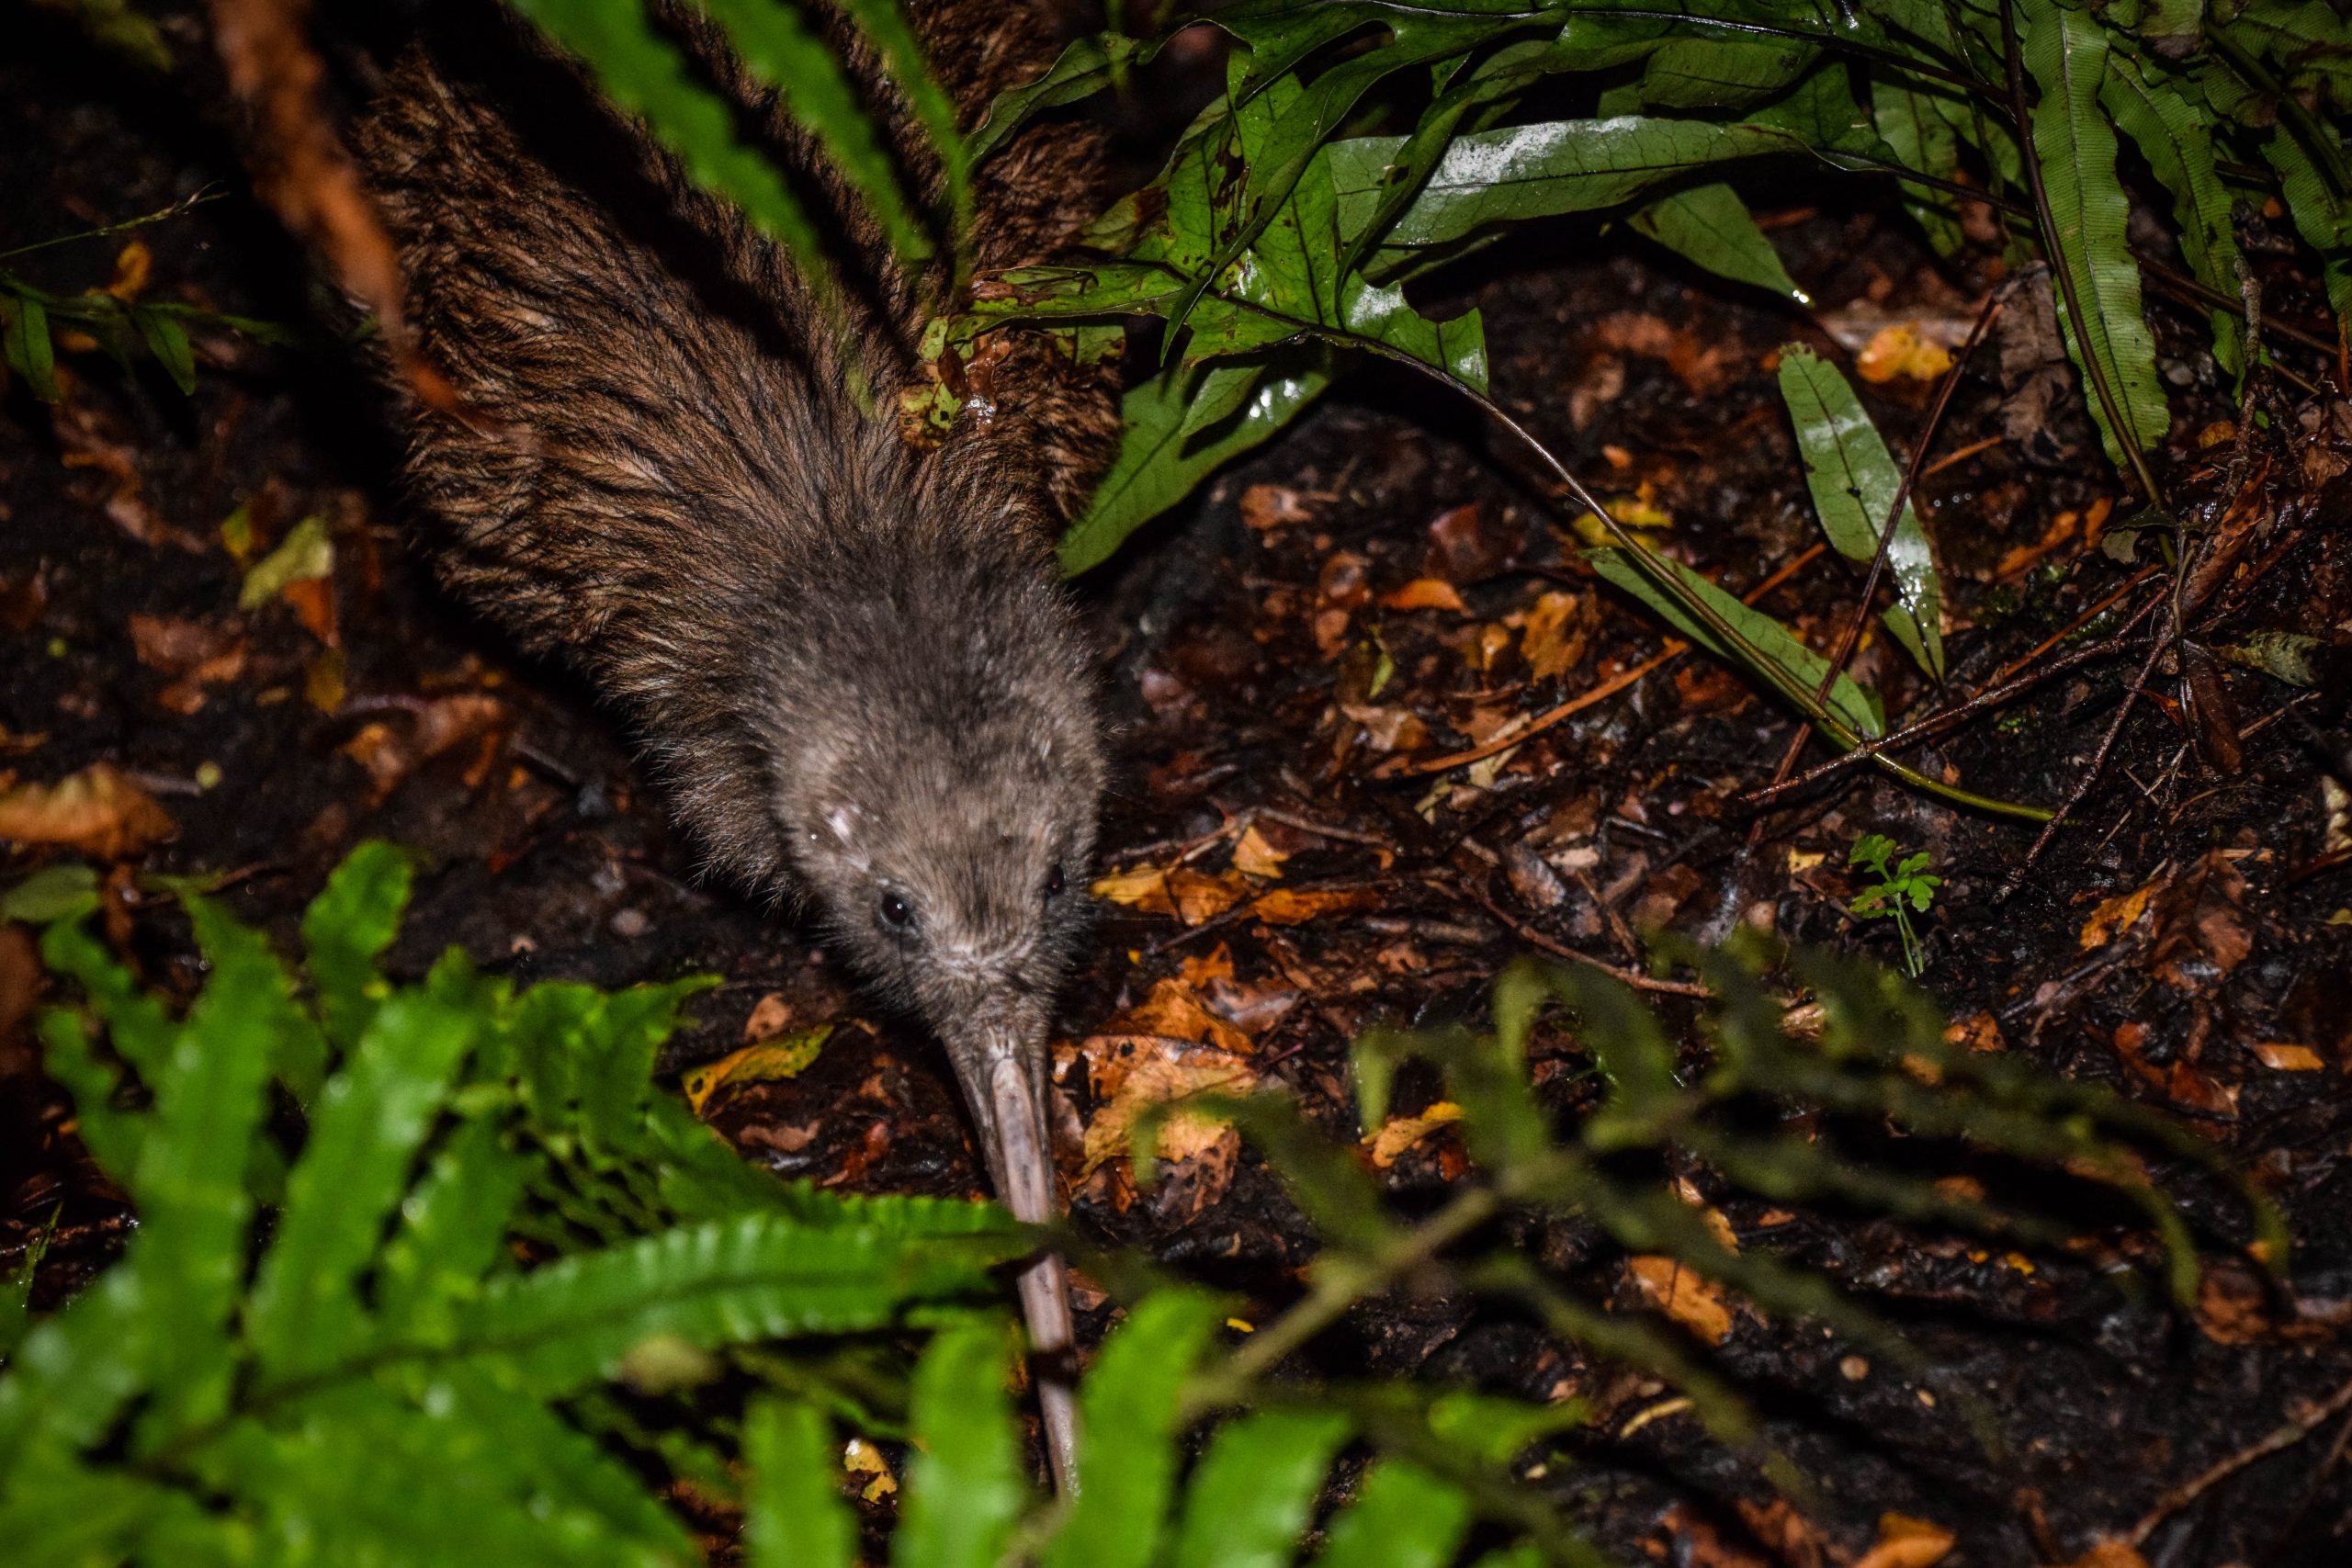 Kiwi on Stewart Island/Rakiura